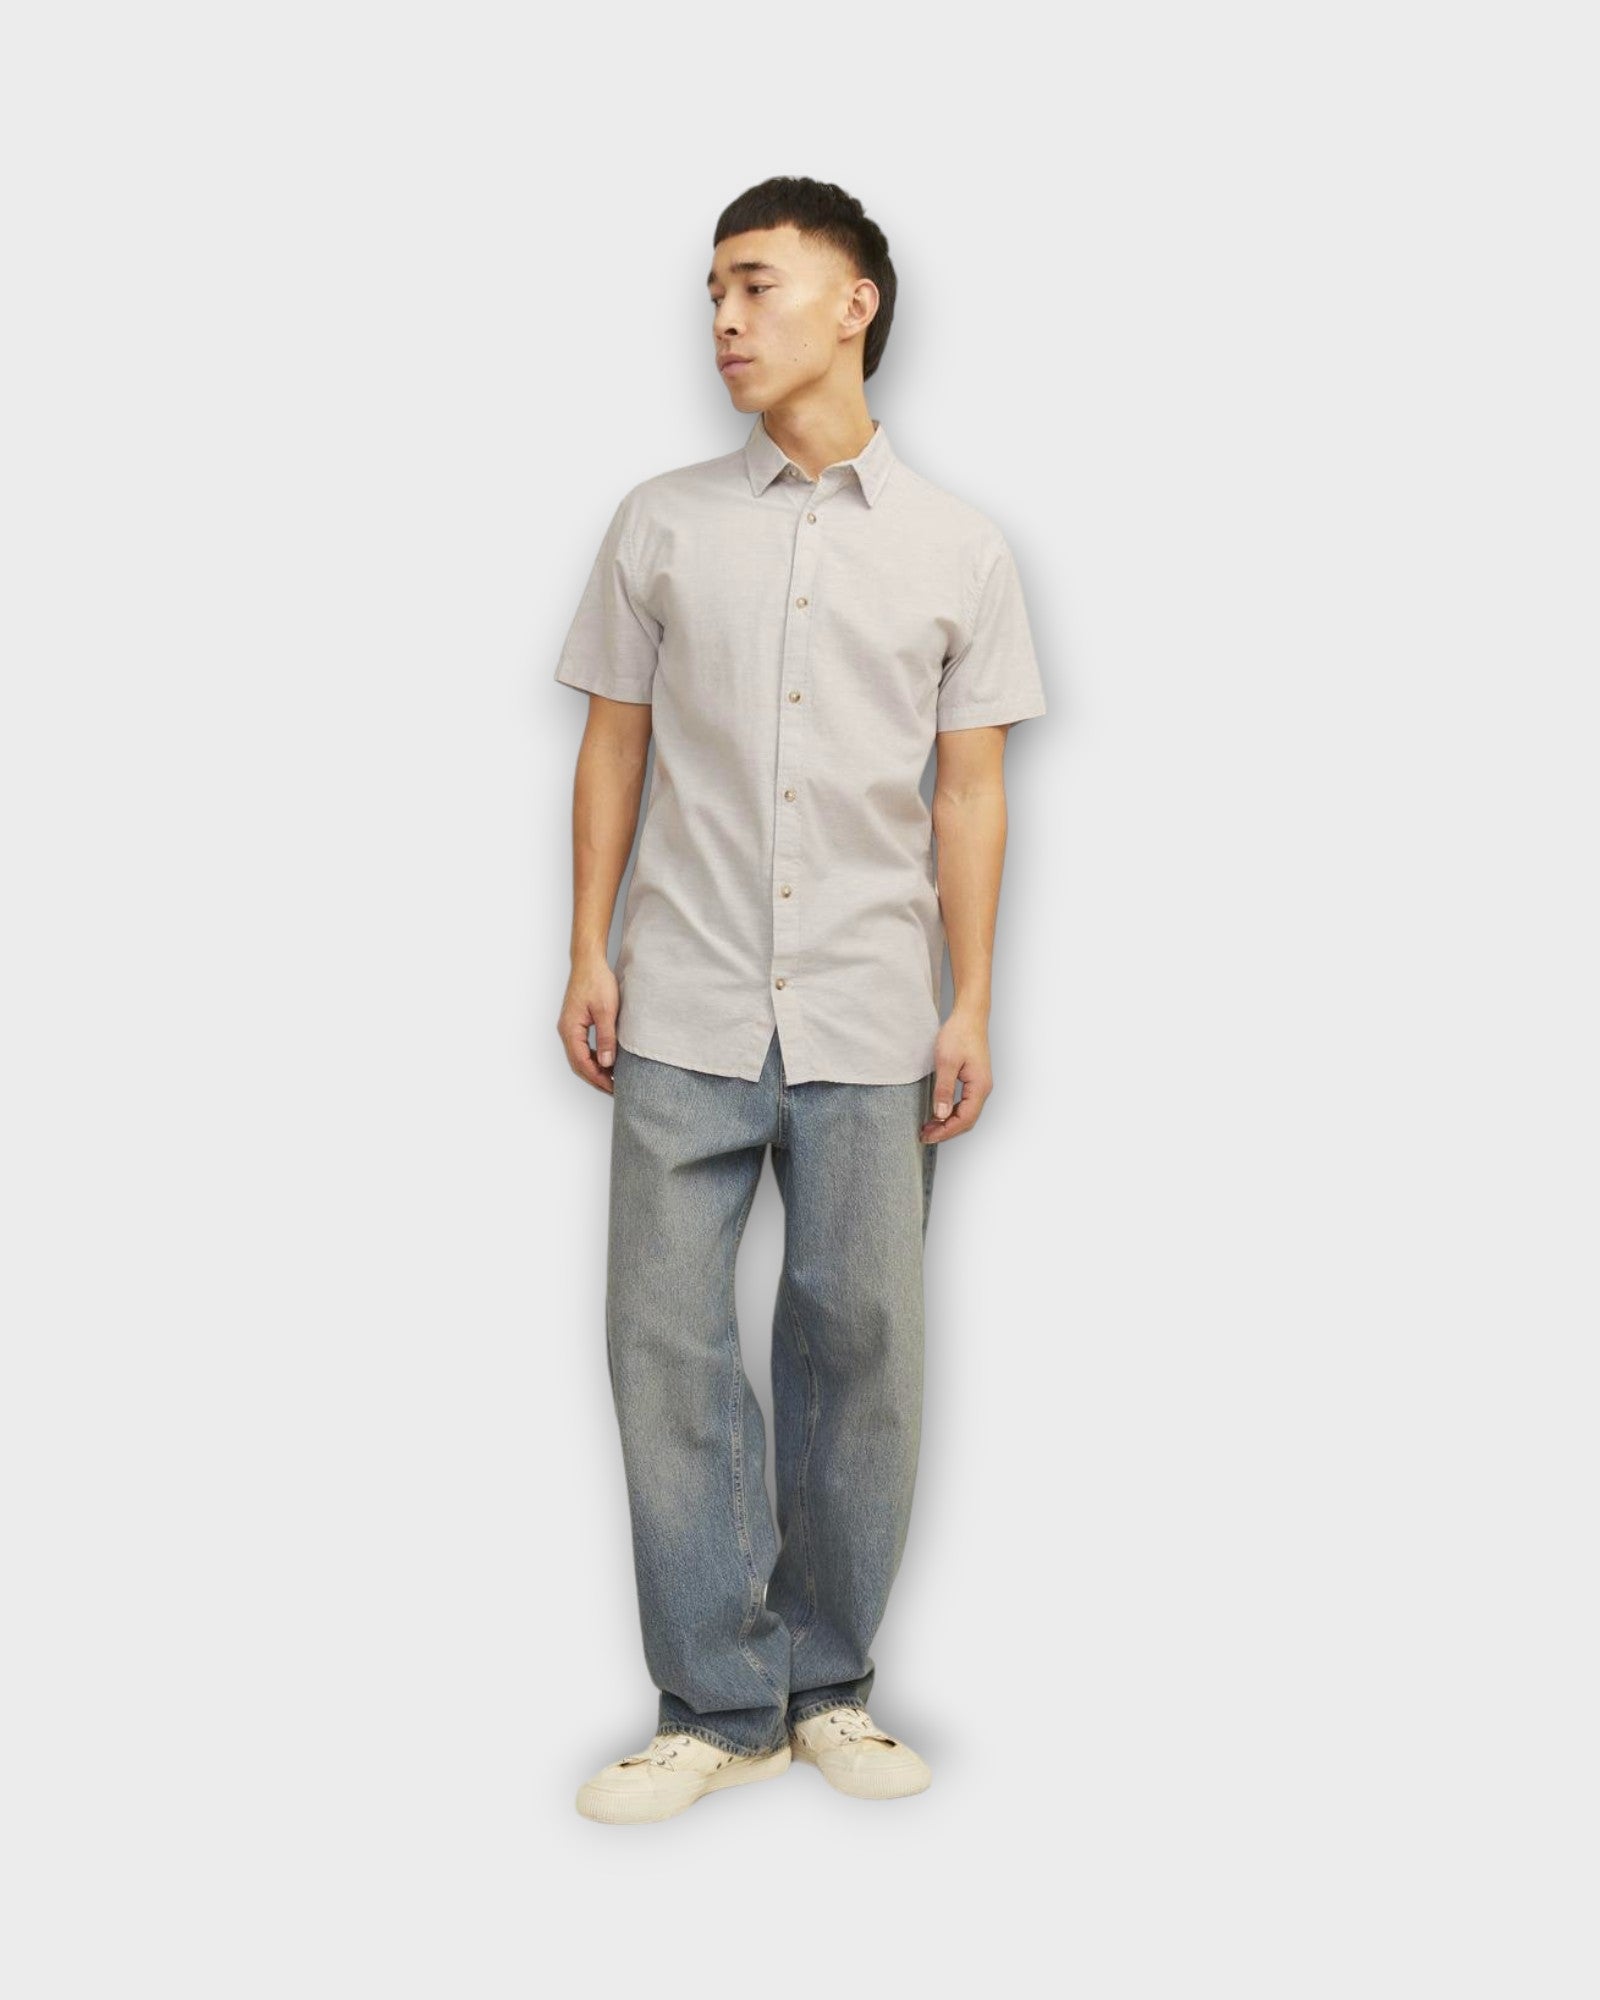 Summer Linen Shirt Crockery fra Jack and Jones. Kortærmet sandfarvet hørskjorte til mænd. Her set på model forfra.